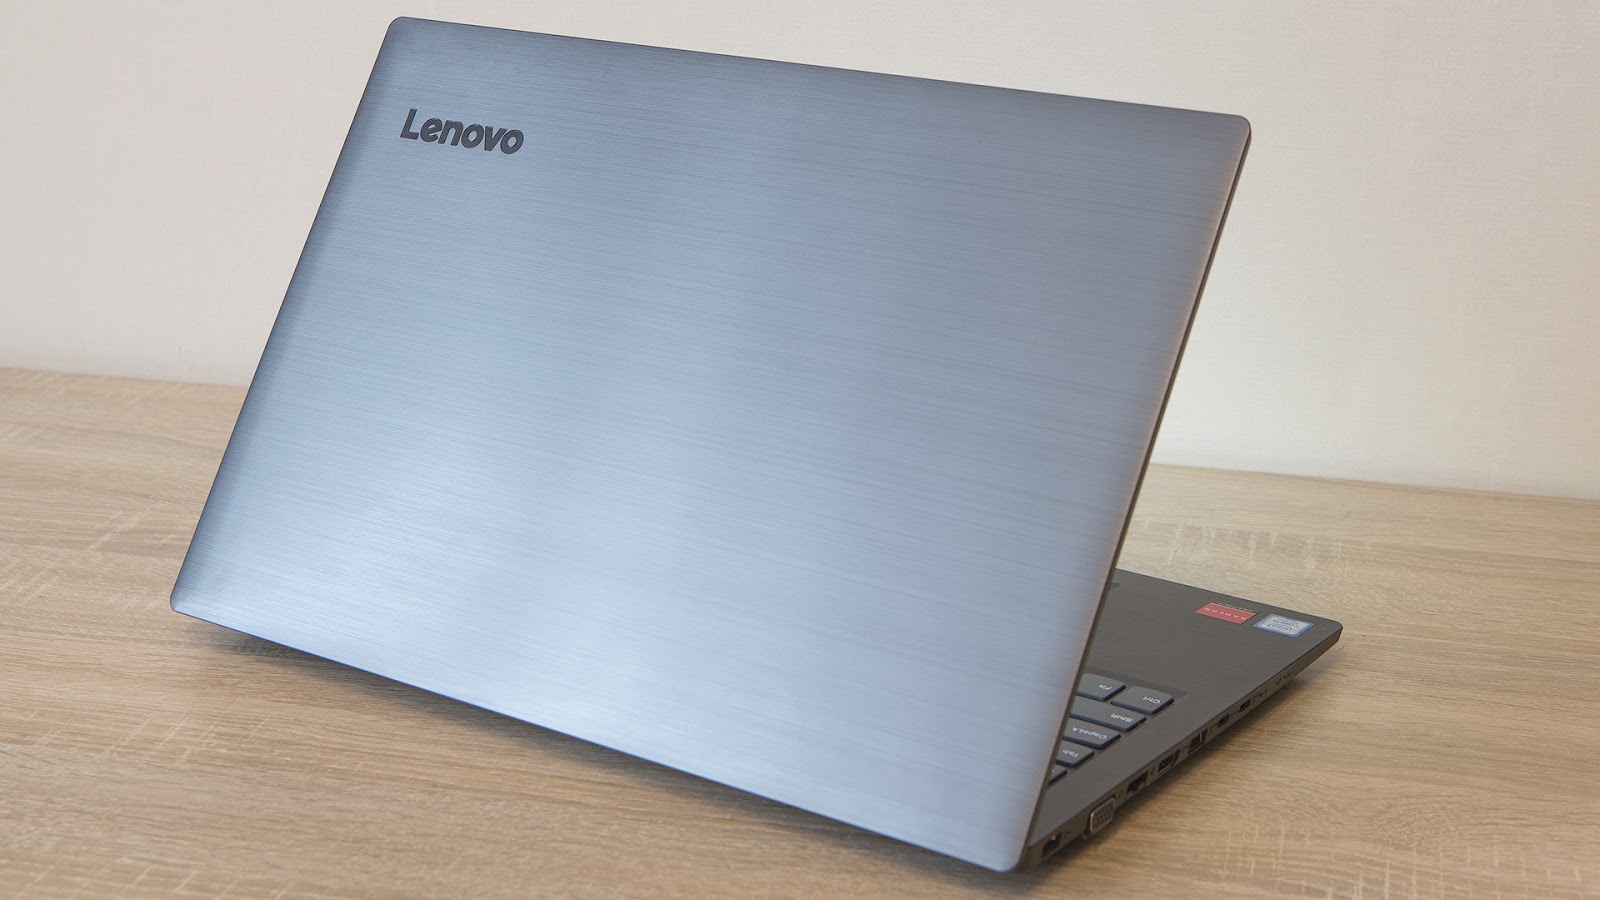 Обзор ноутбука Lenovo V330-15: надёжный офисный трудяга - 1